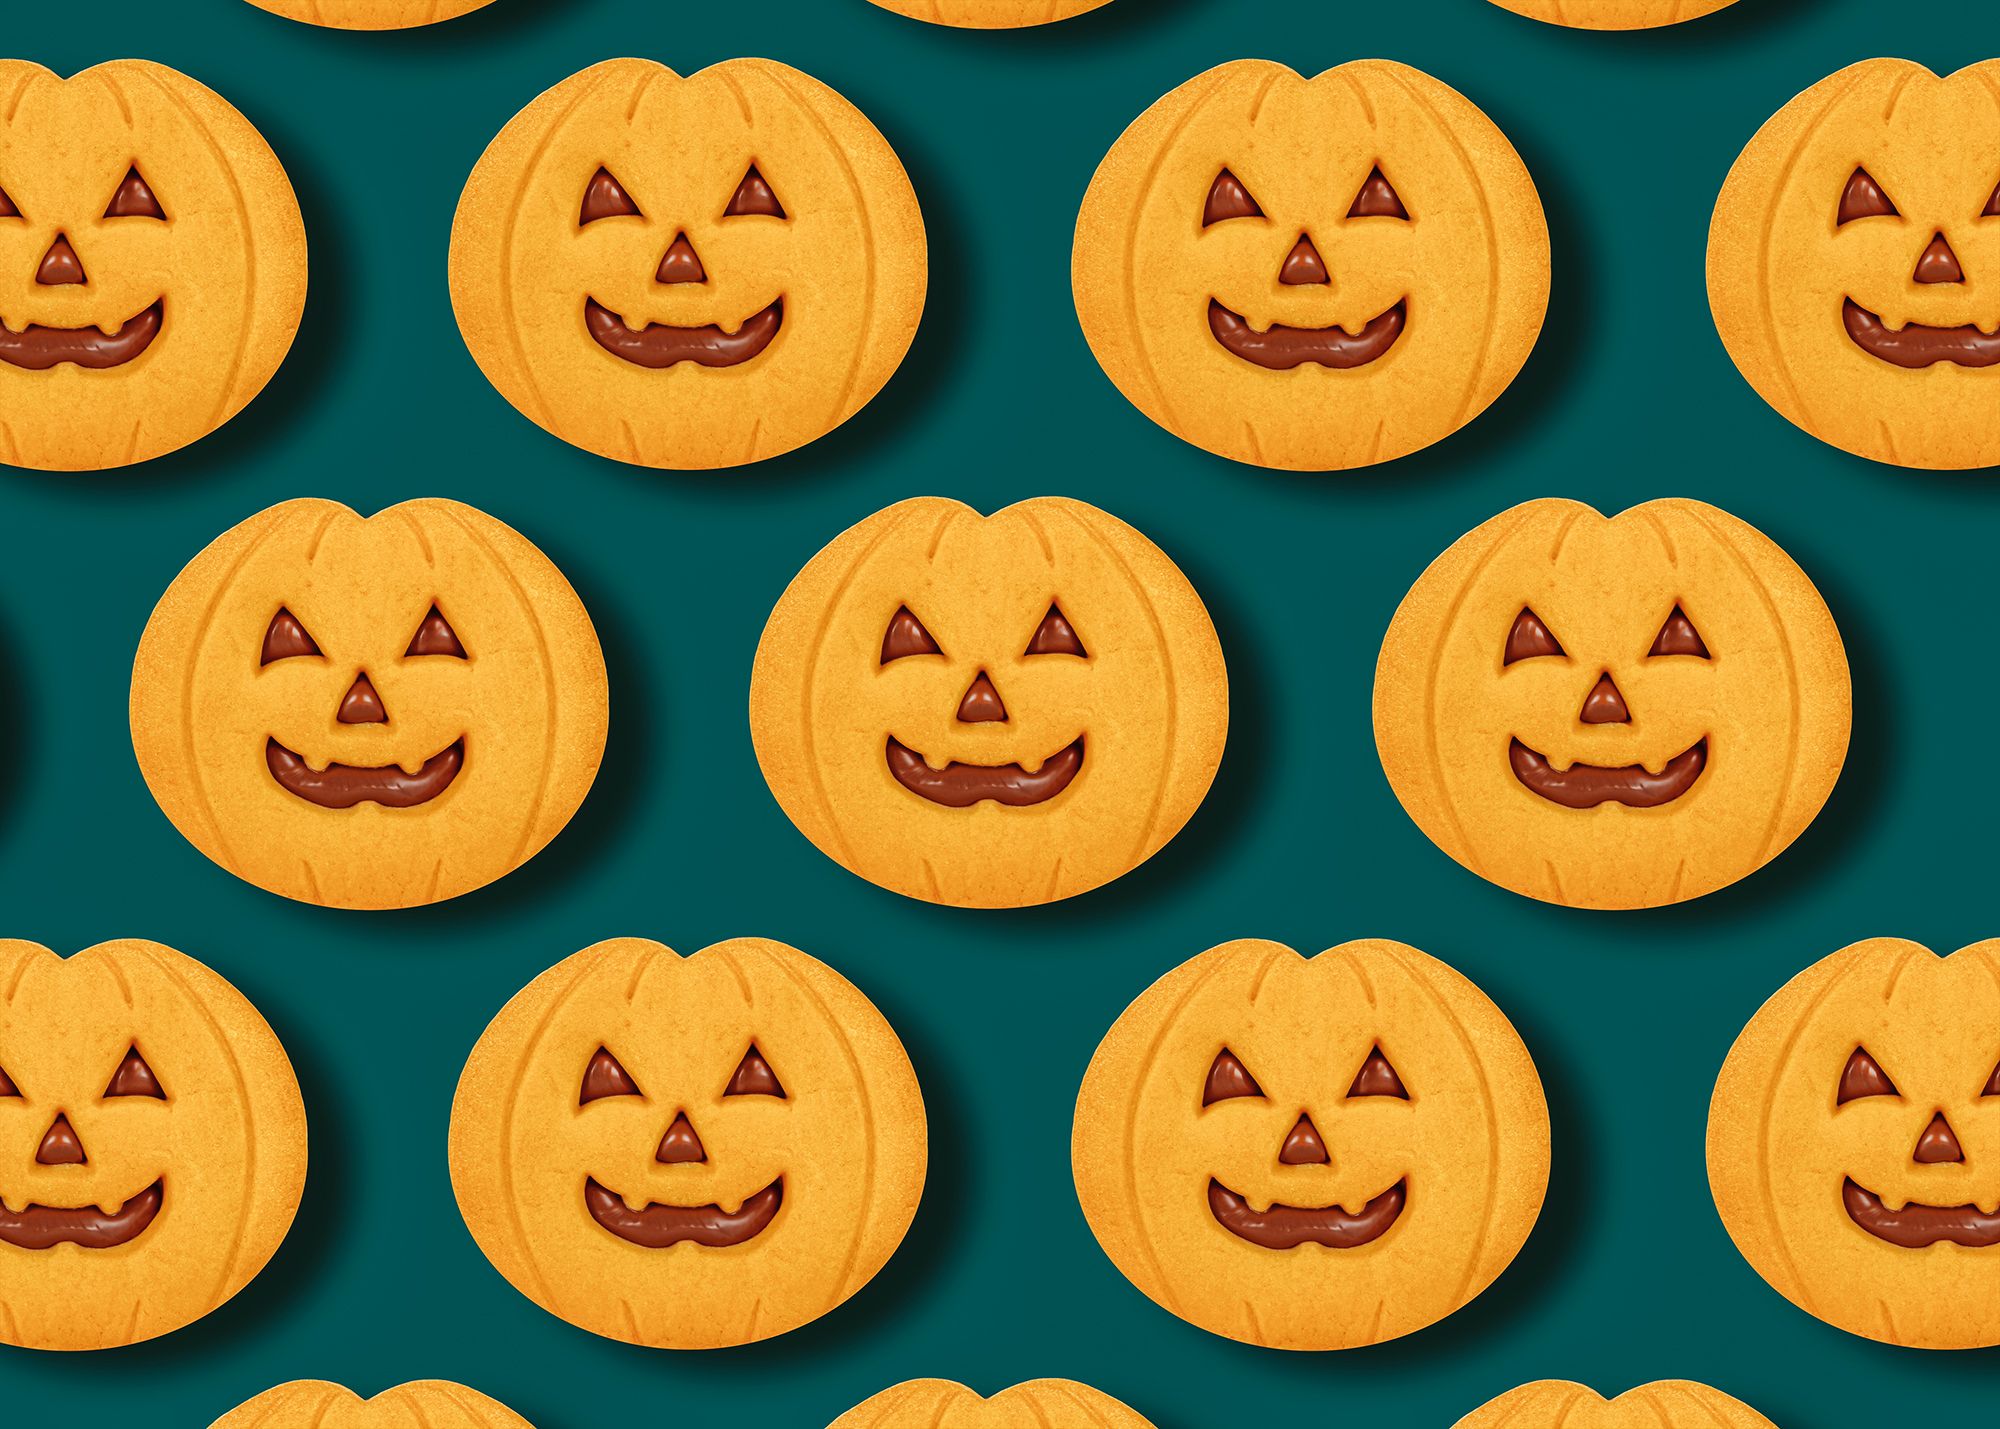 Acier Inoxydable 12,5 x 5,3 cm KENIAO Halloween Chauve-souris Emporte-pièces Biscuits Fondant